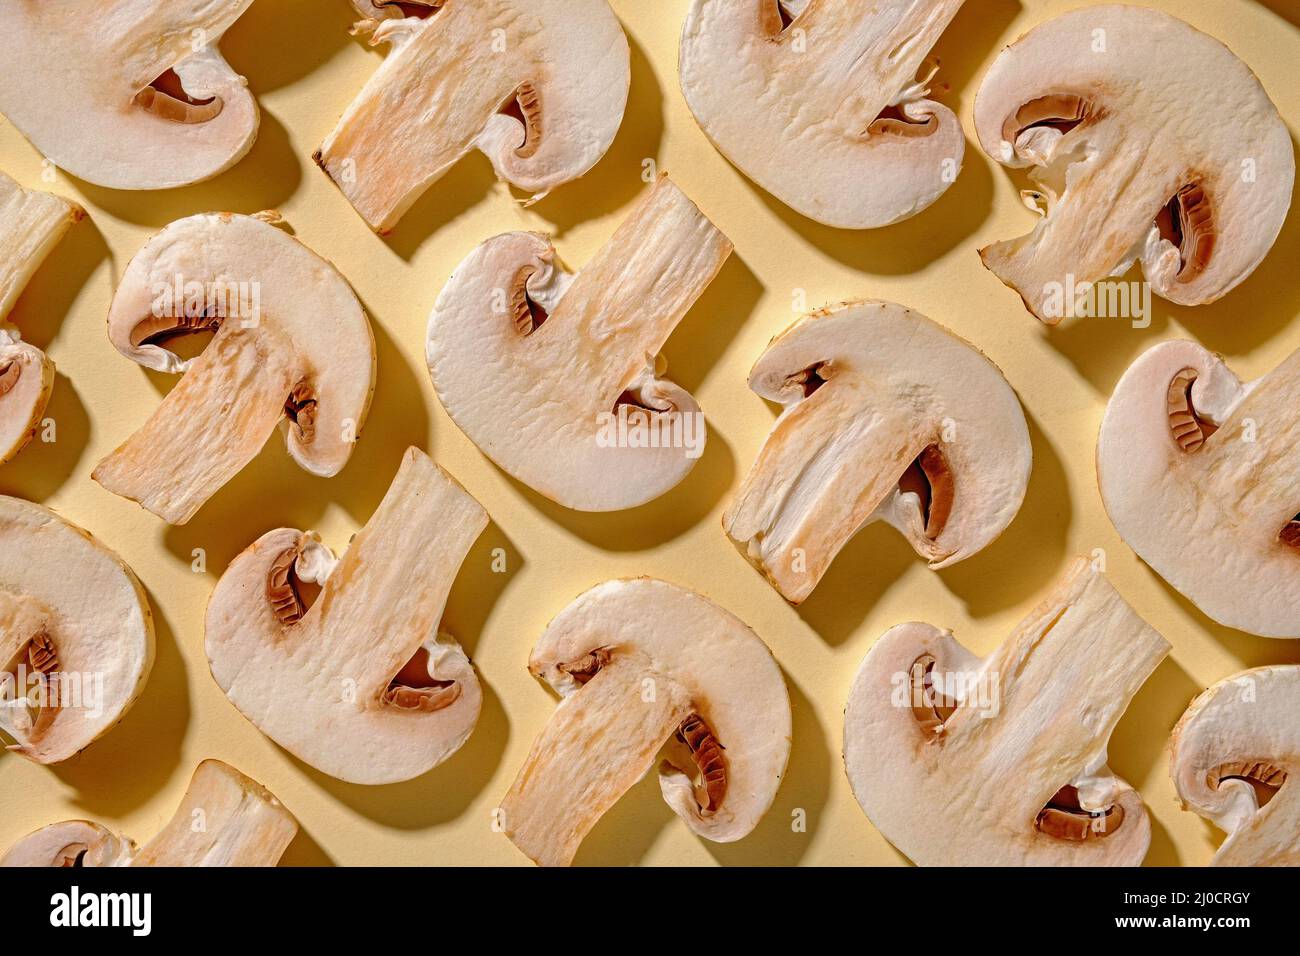 Motif de champignons frais sur fond jaune pour la cuisson. Concept moderne minimaliste et couleur pastel. Banque D'Images